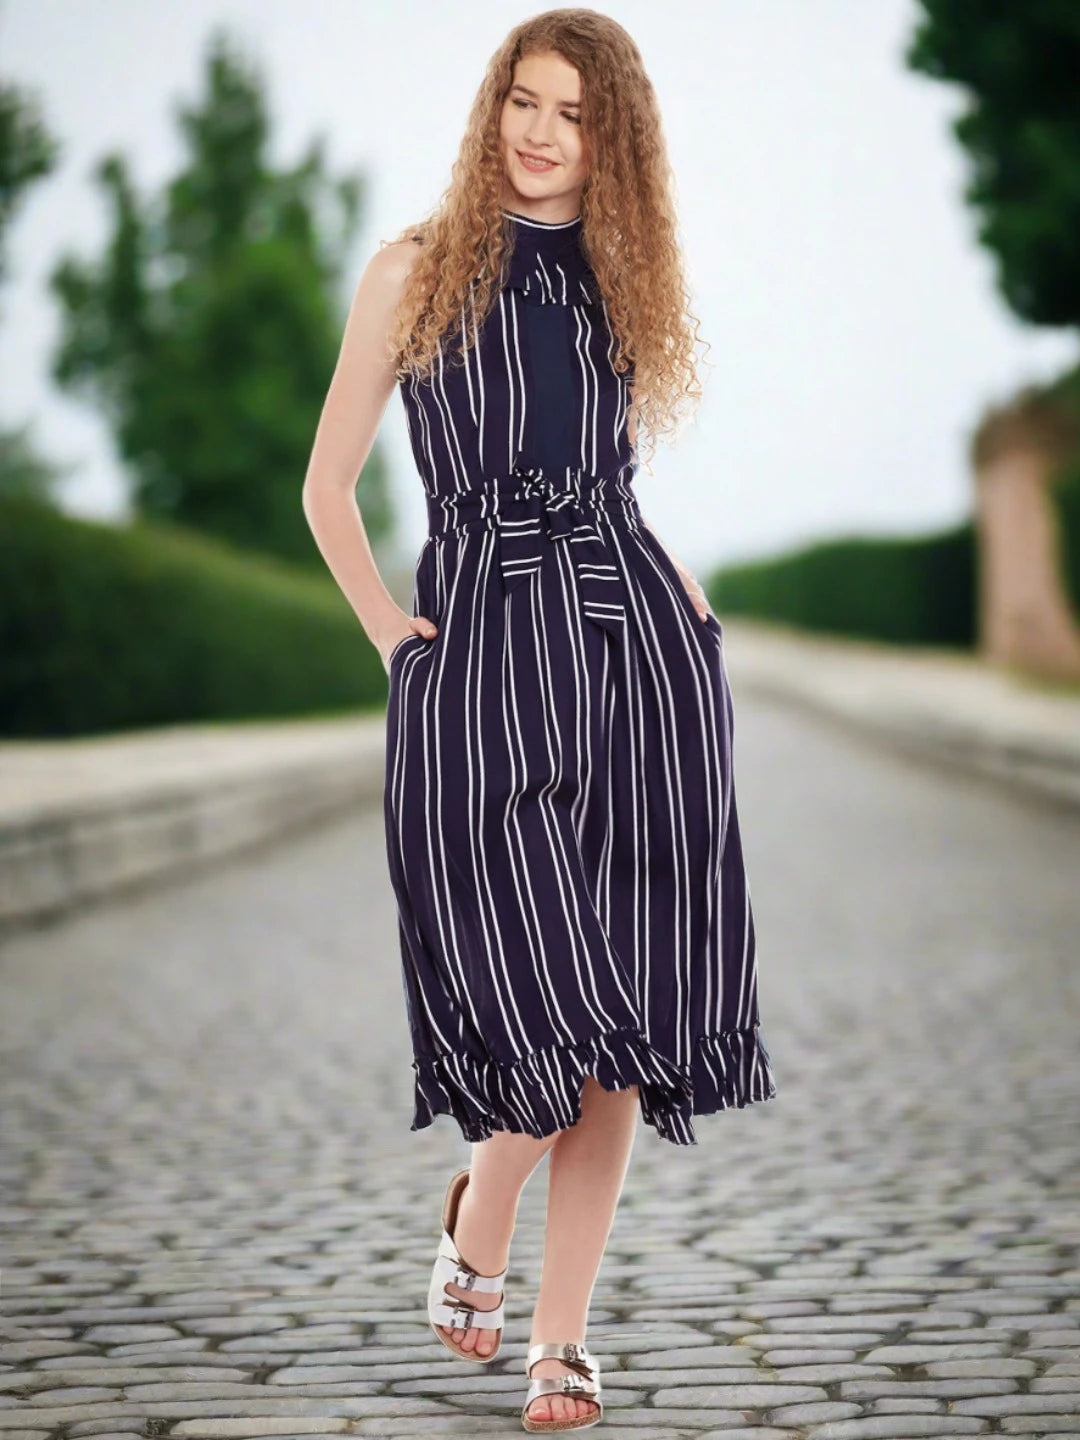 Belted Stripes Dress